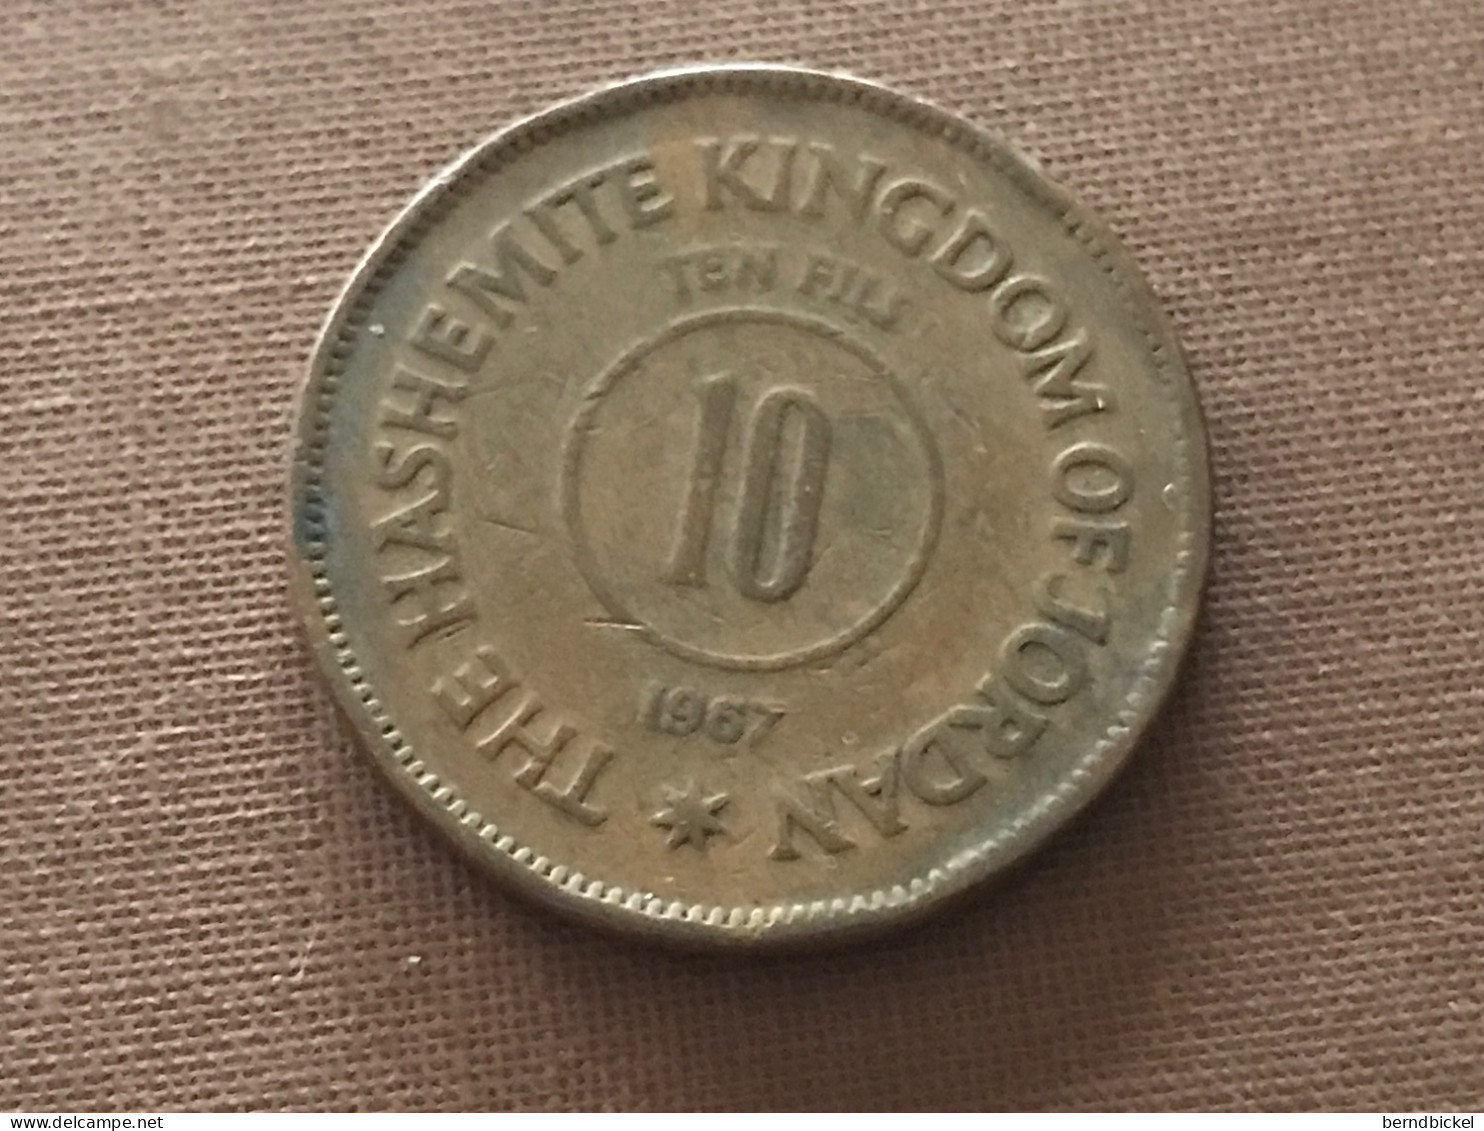 Münze Münzen Umlaufmünze Jordanien 10 Fils 1967 - Jordania